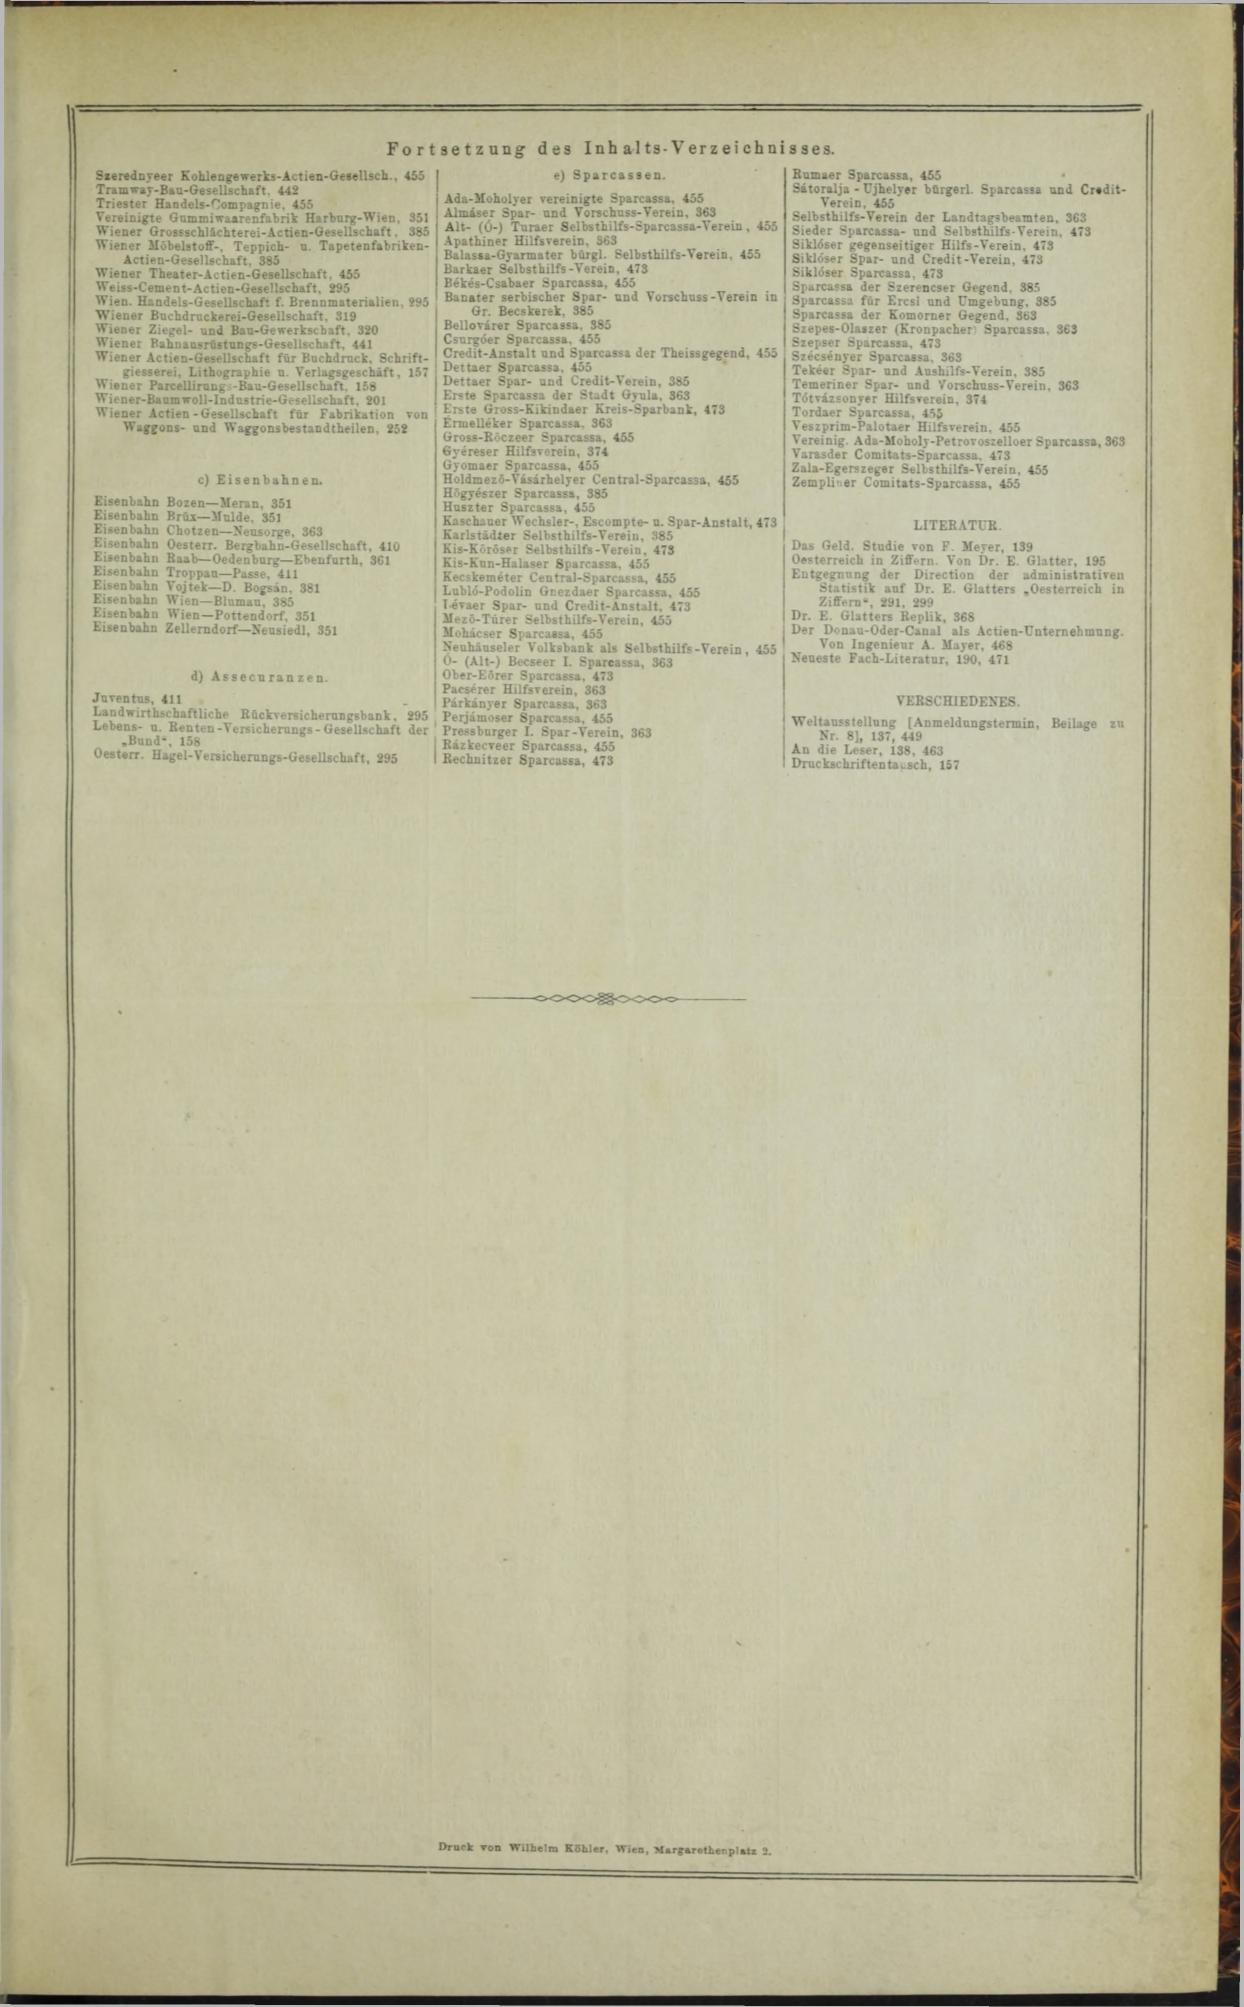 Der Tresor 25.09.1872 - Seite 14